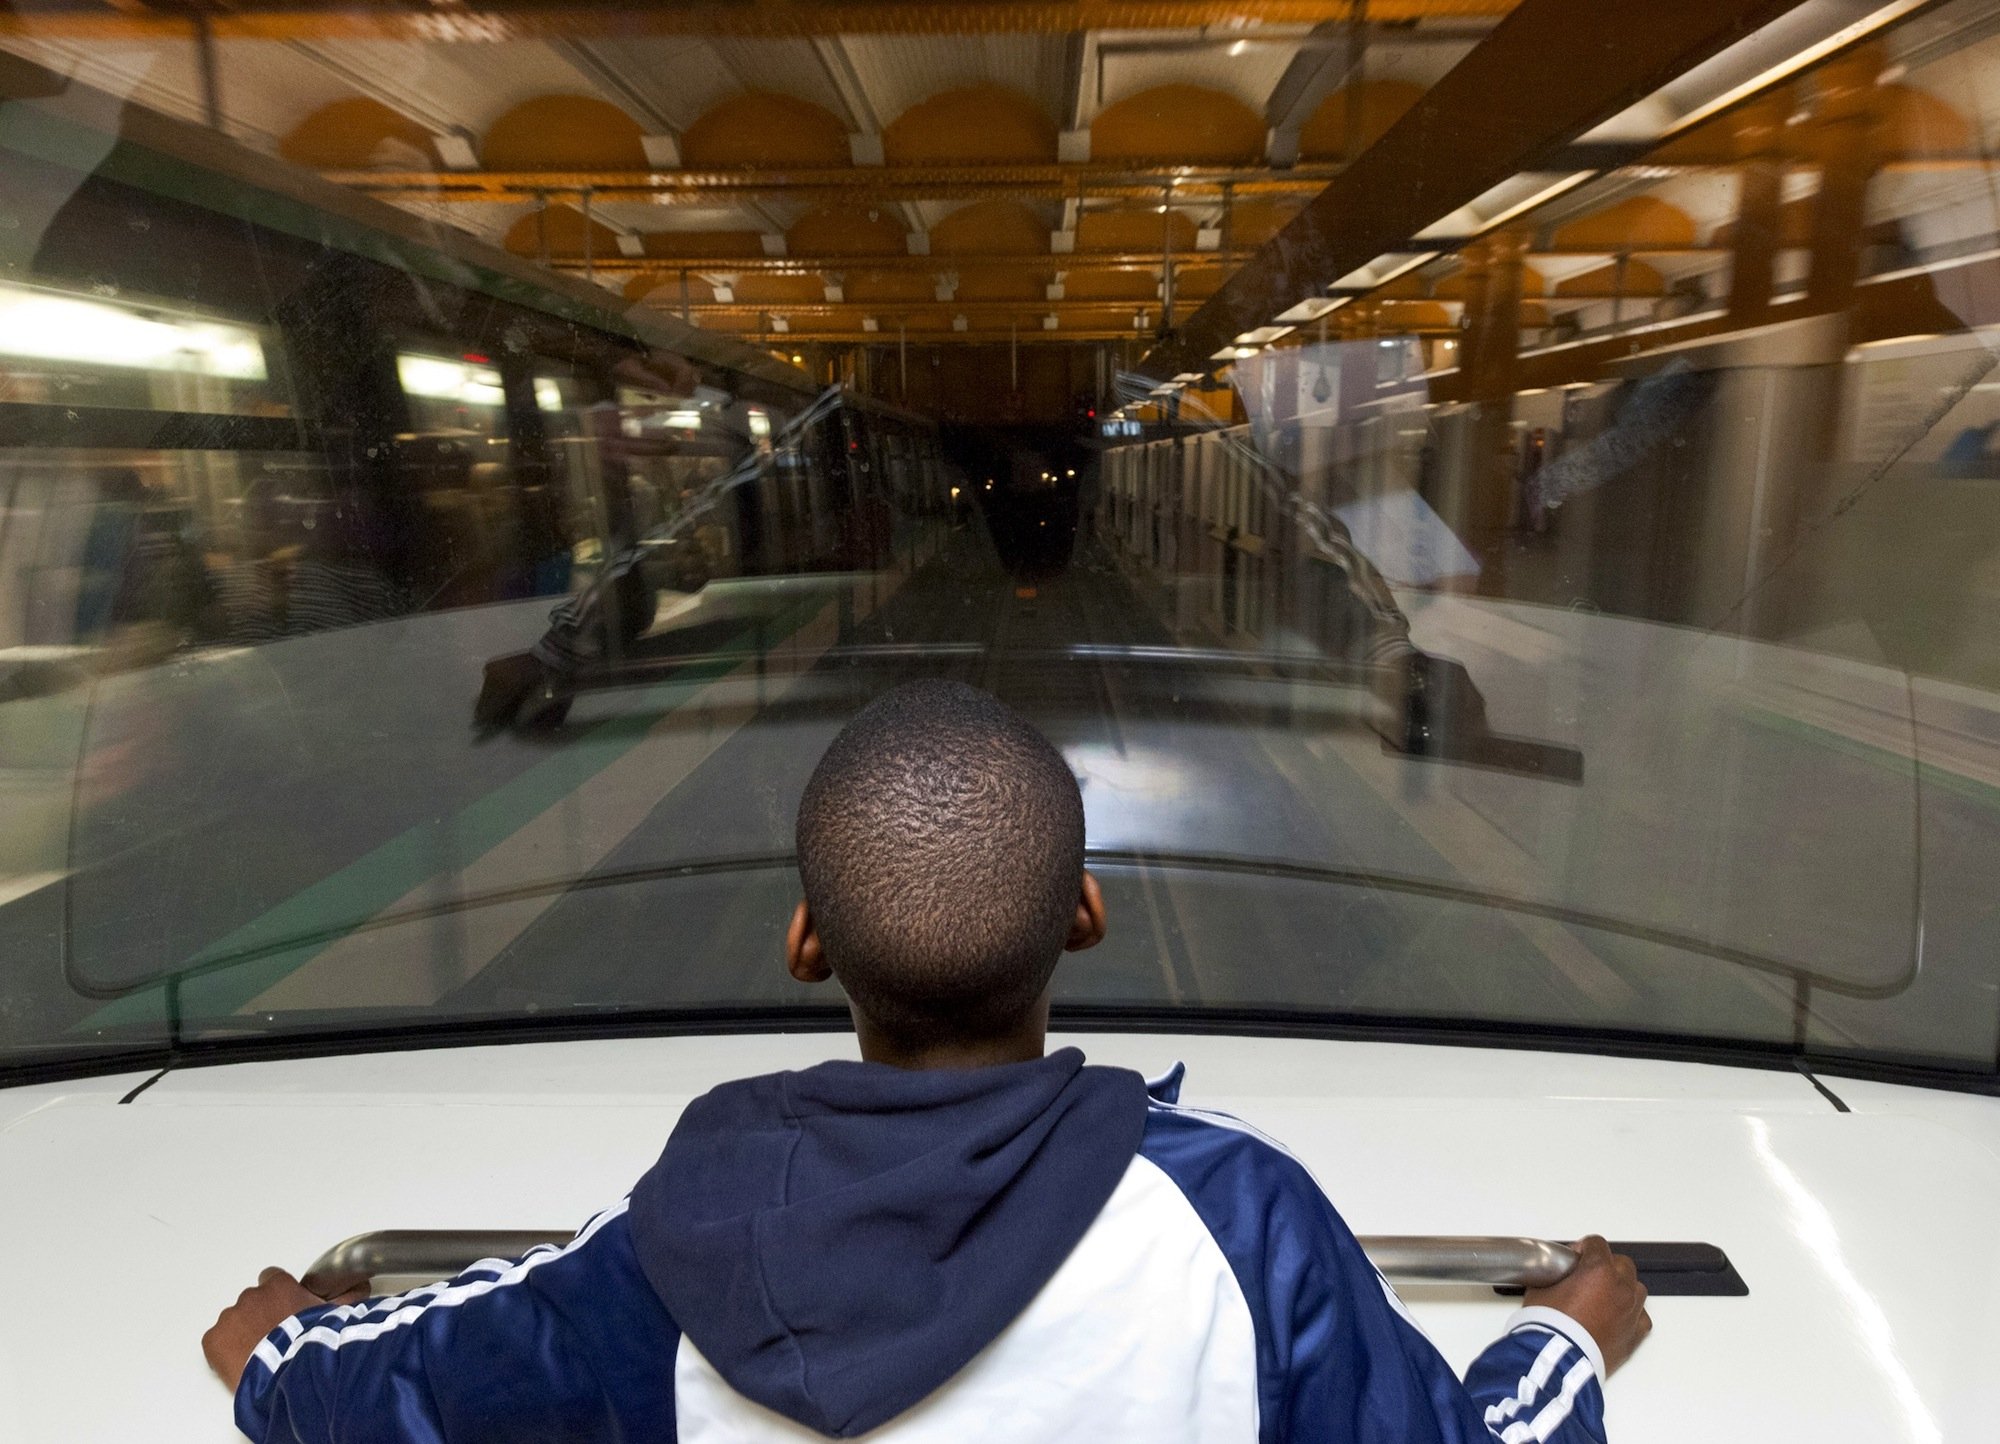 Ein Junge in einer fahrerlosen Metro genau dort, wo sonst der Fahrer sitzt: Die Pariser Metro betreibt zwei Linien mit fahrerlosen Zügen. In der Spitze ermöglicht die Technik einen 85-Sekunden-Takt, der mit gewöhnlichen Zügen nicht zu schaffen ist.